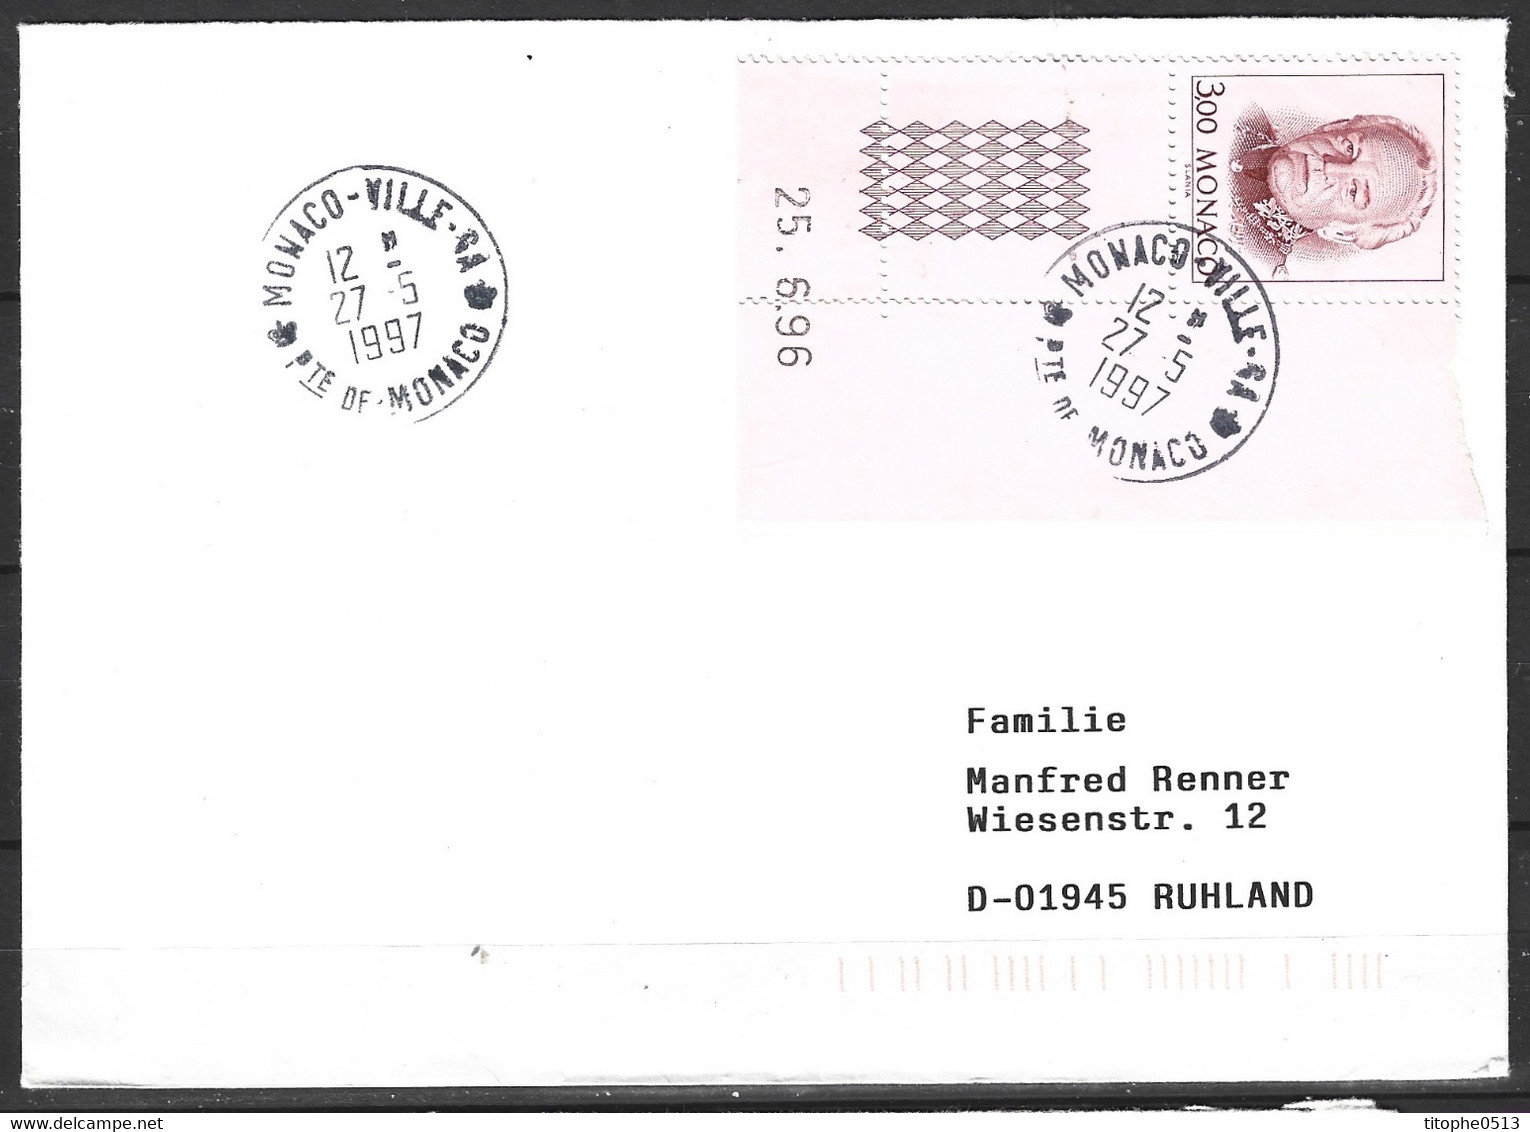 MONACO. N°2055 De 1996 Sur Enveloppe Ayant Circulé. Prince Rainier III. - Briefe U. Dokumente